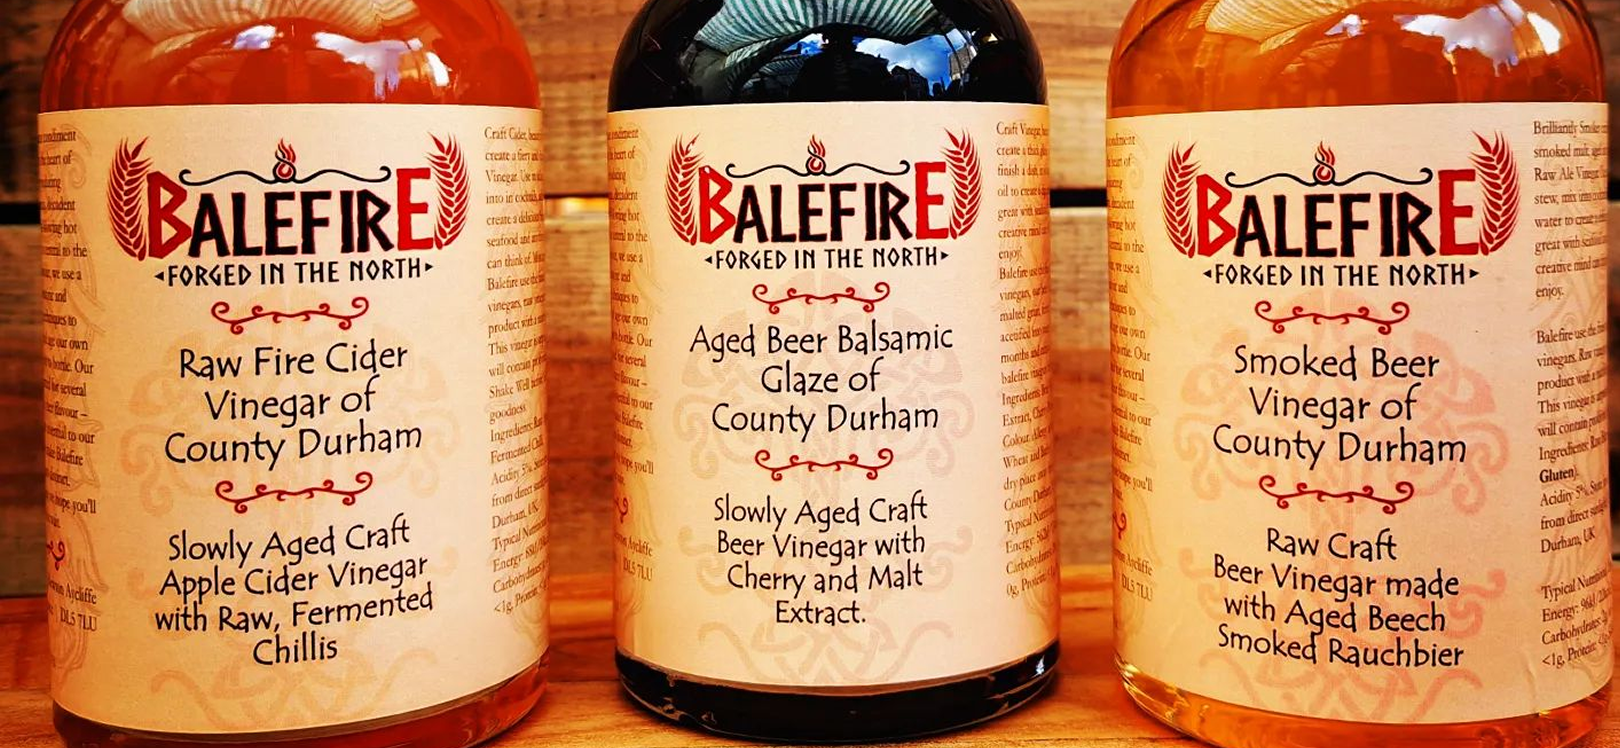 Balefire bottles